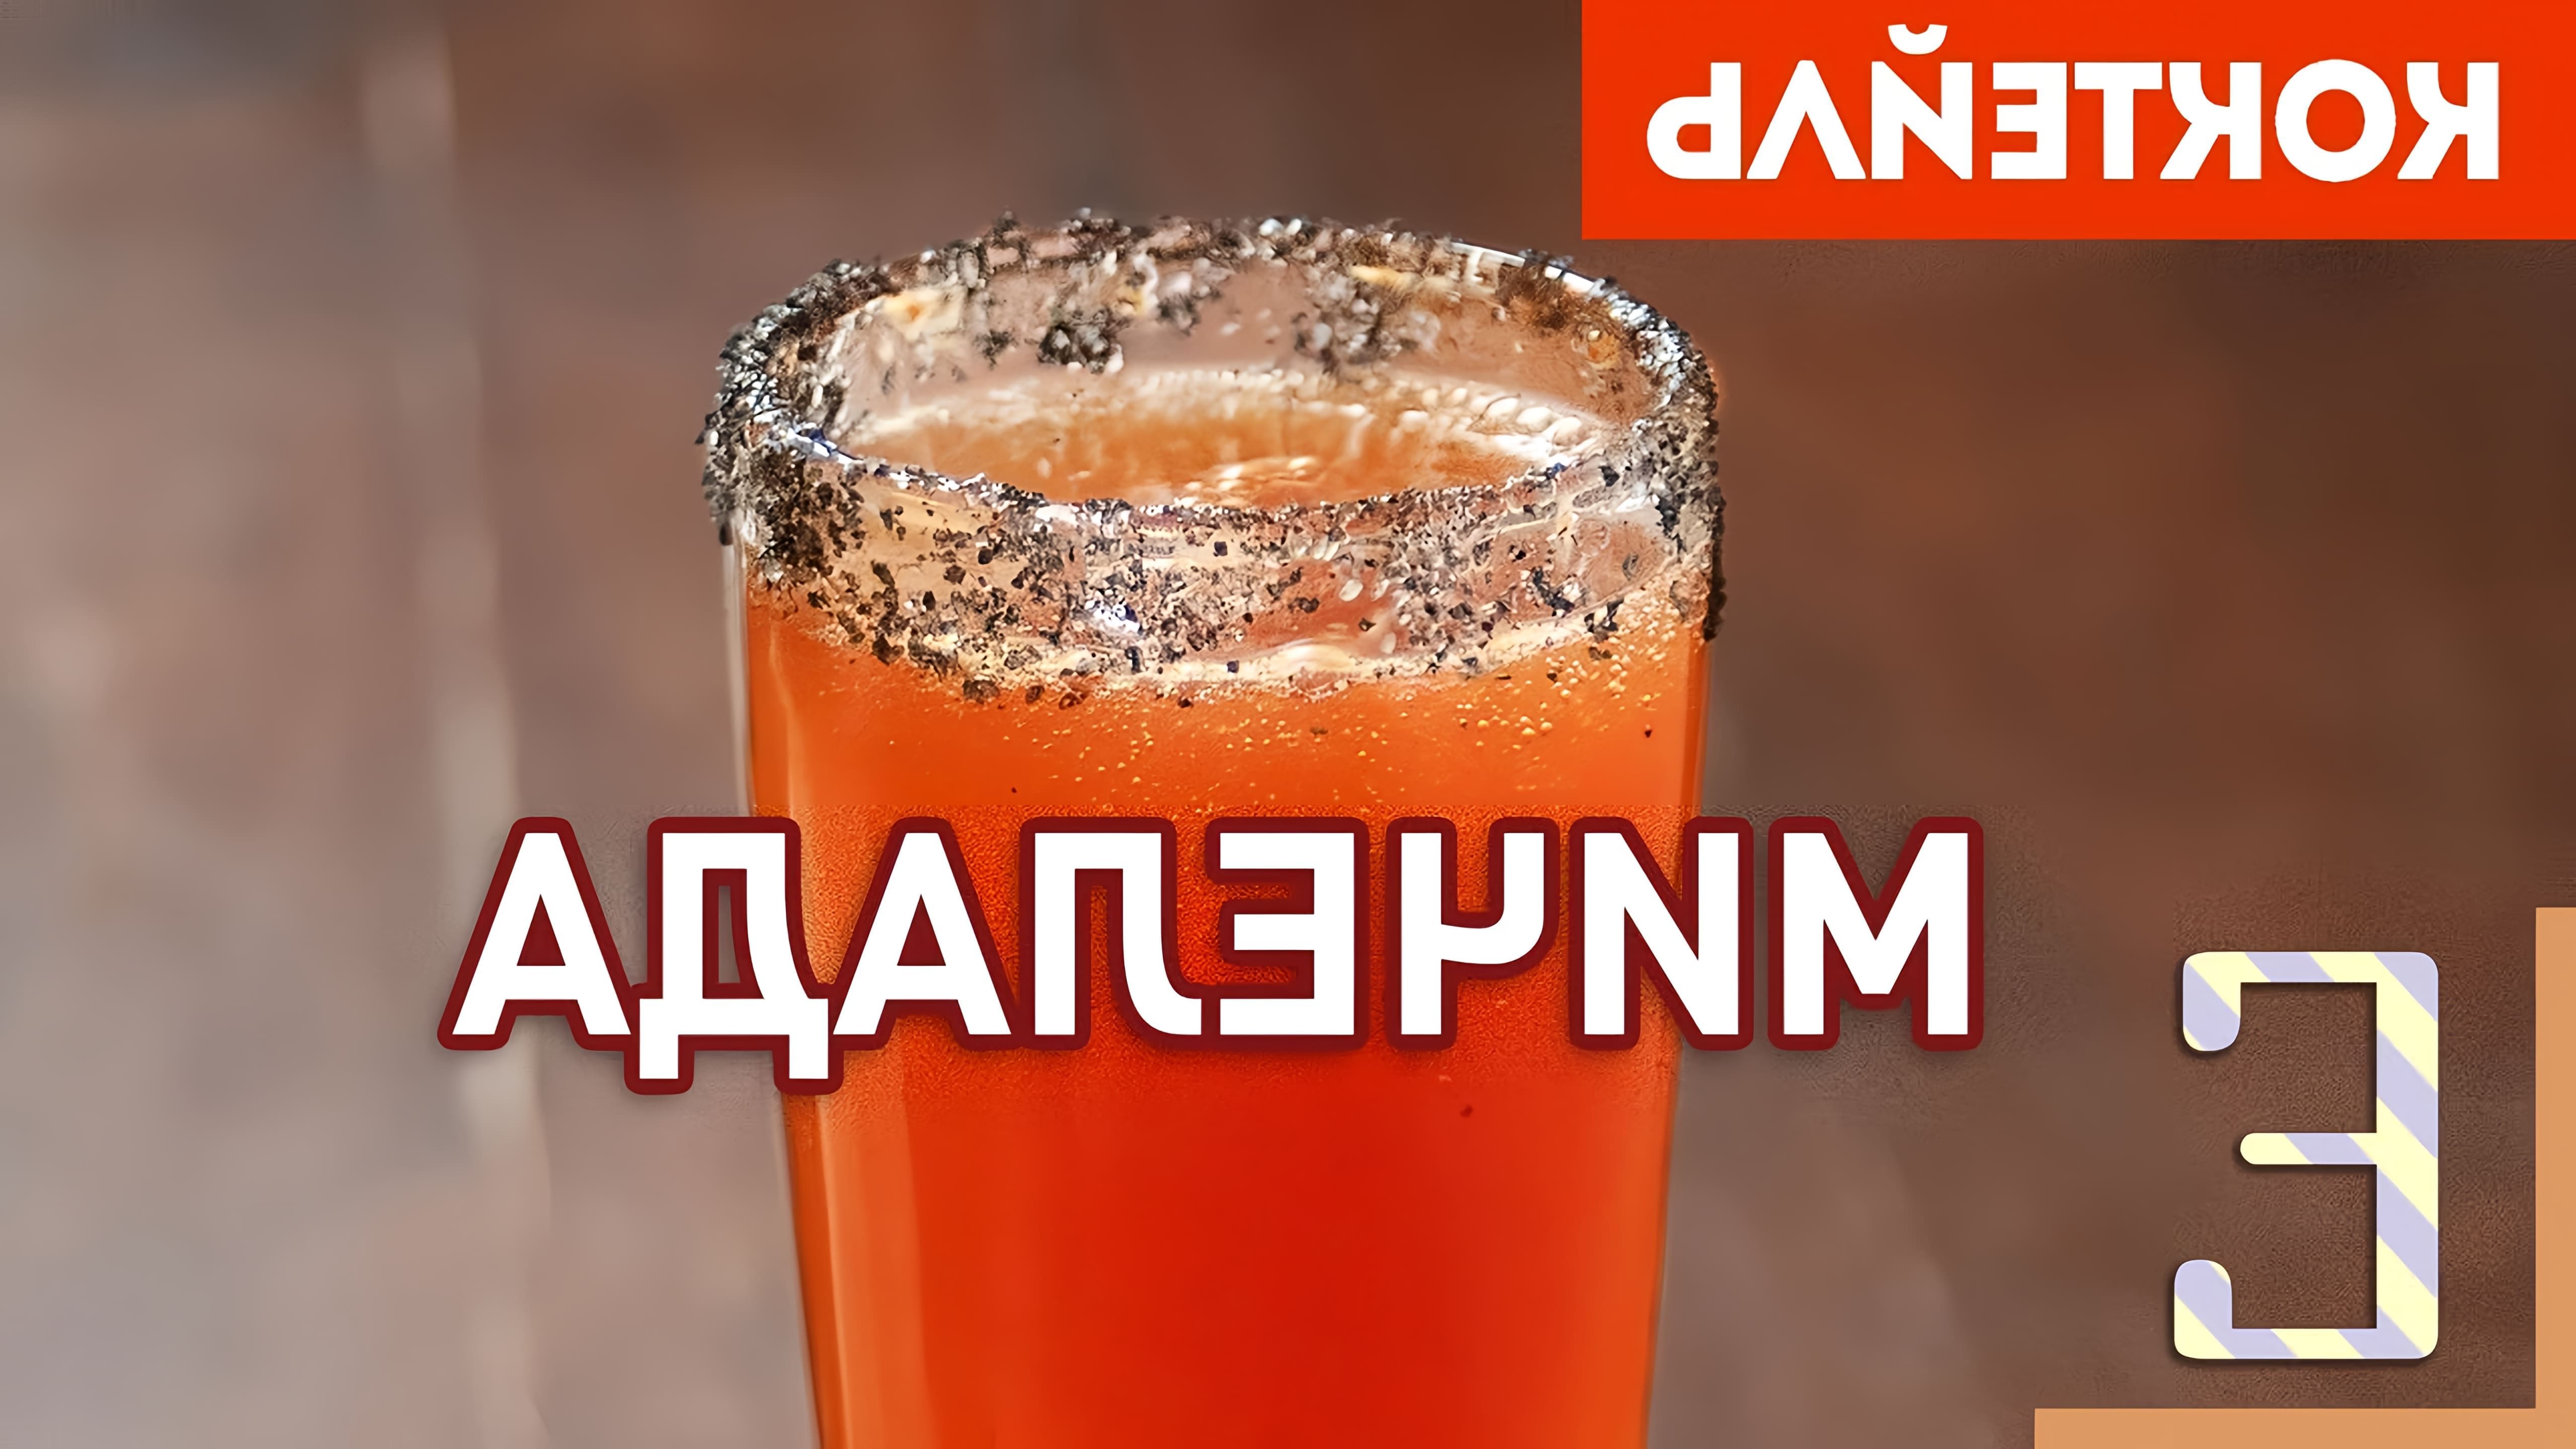 В этом видео Василий Захаров рассказывает о рецепте пивного коктейля под названием "Мичелада"